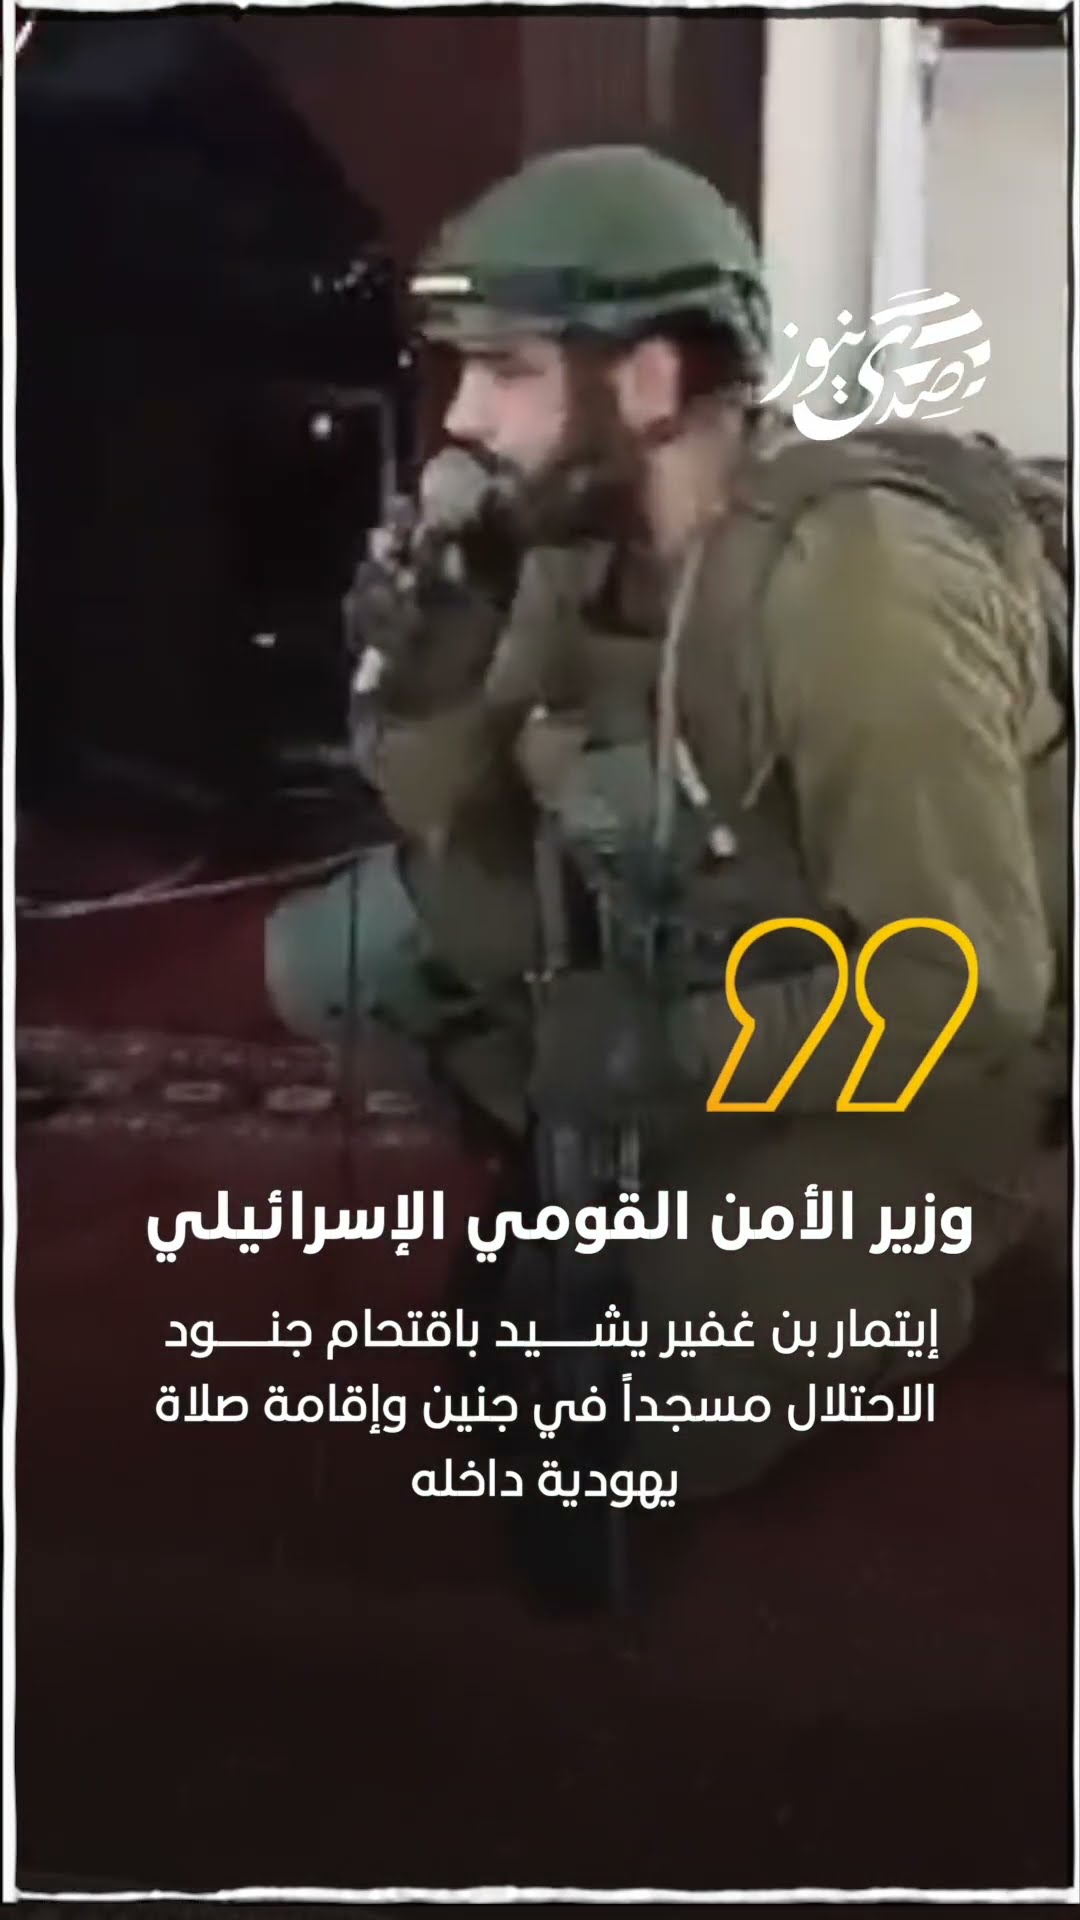 صدى نيوز | وزير الأمن القومي الإسرائيلي إيتمار بن غفير يشيد باقتحام جنود الاحتلال مسجداً في جنين